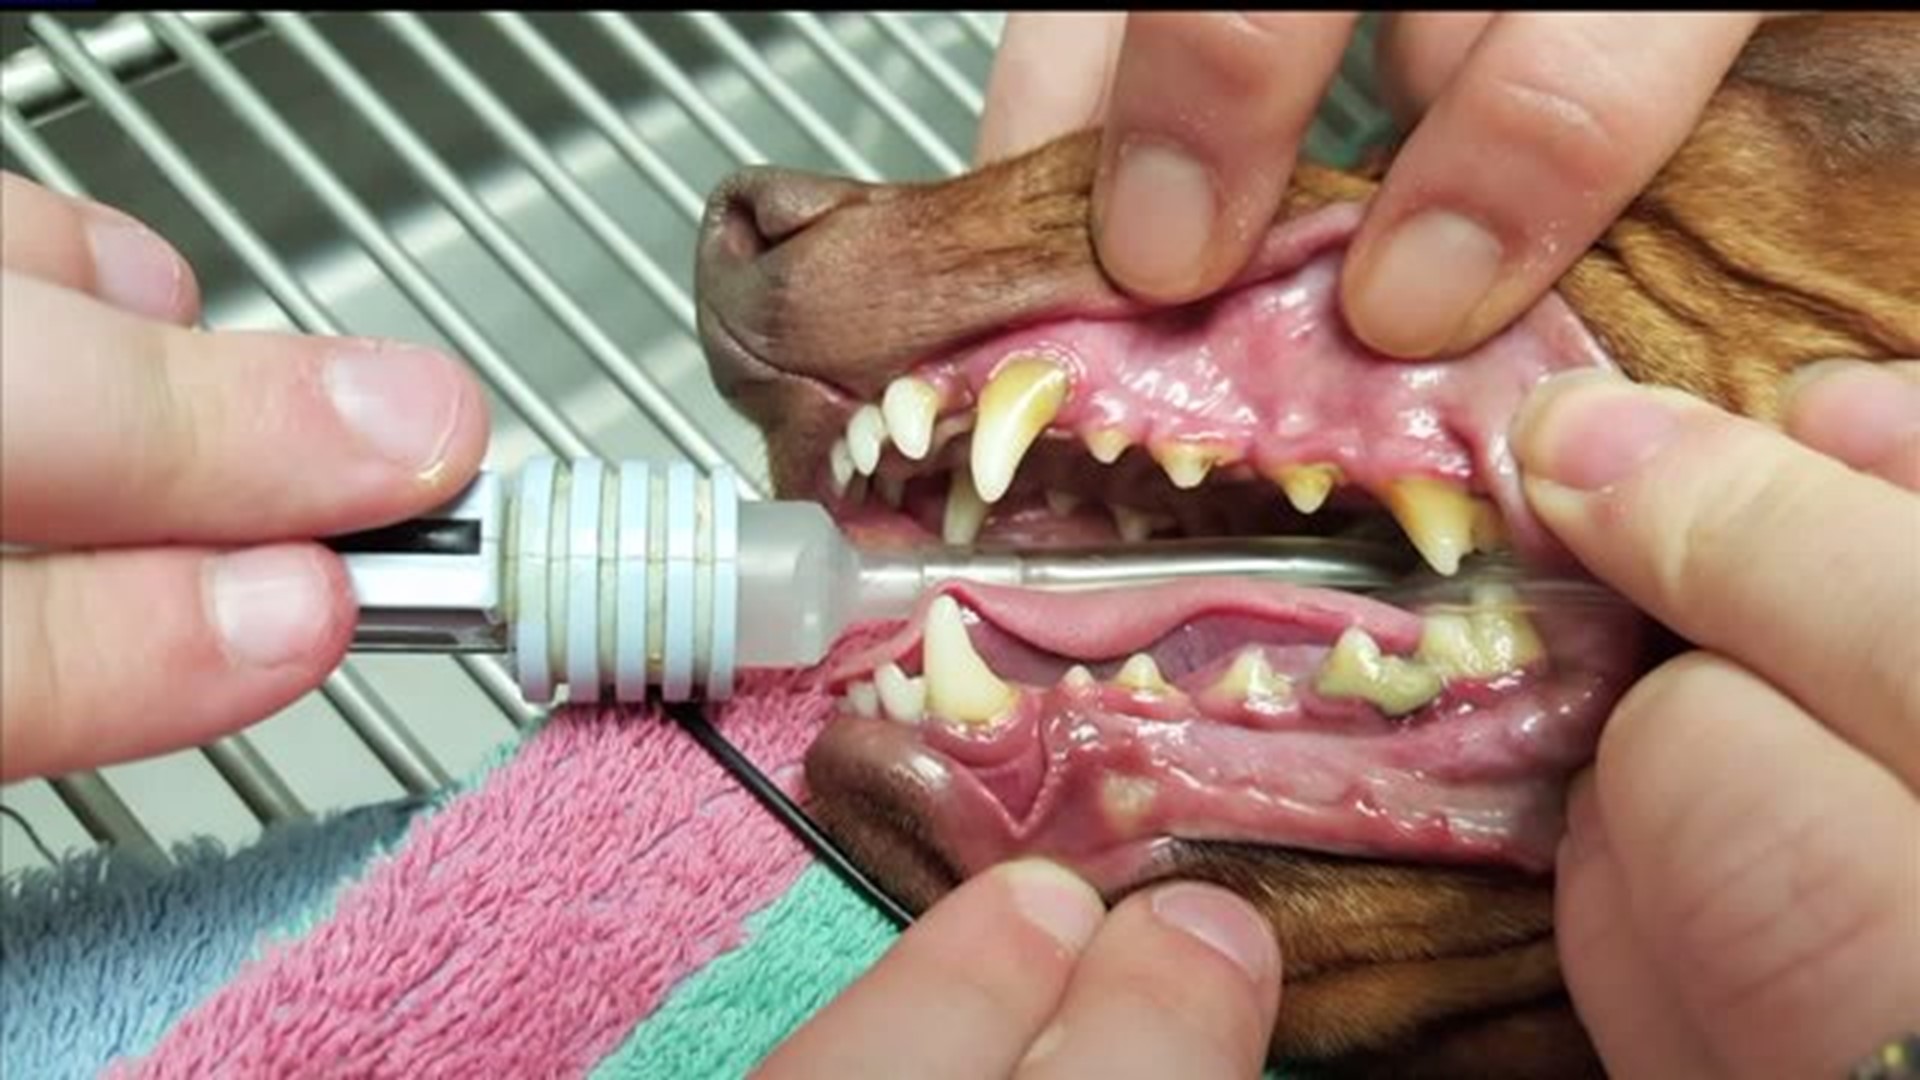 February is National Vet Dental Month